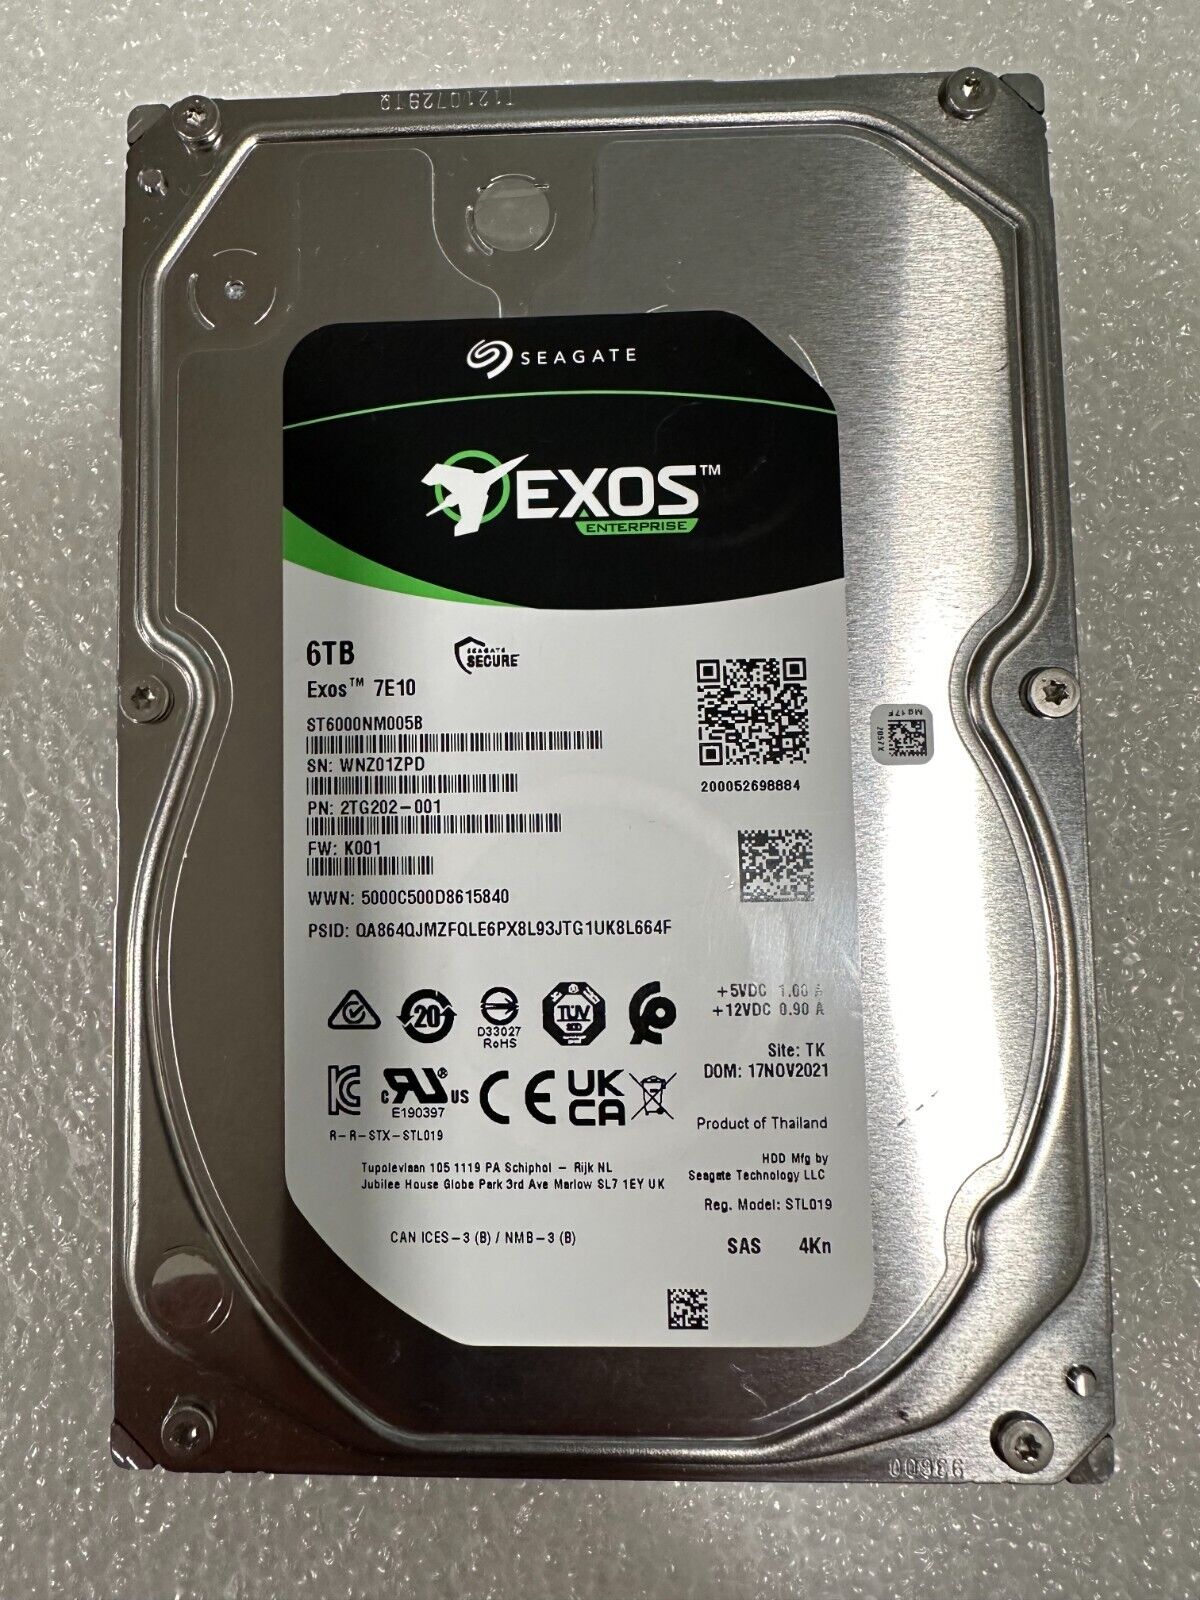 Seagate Exos 7E10 ST6000NM005B 6TB 4Kn SAS 12GB/s, 7.2K SAS HDD